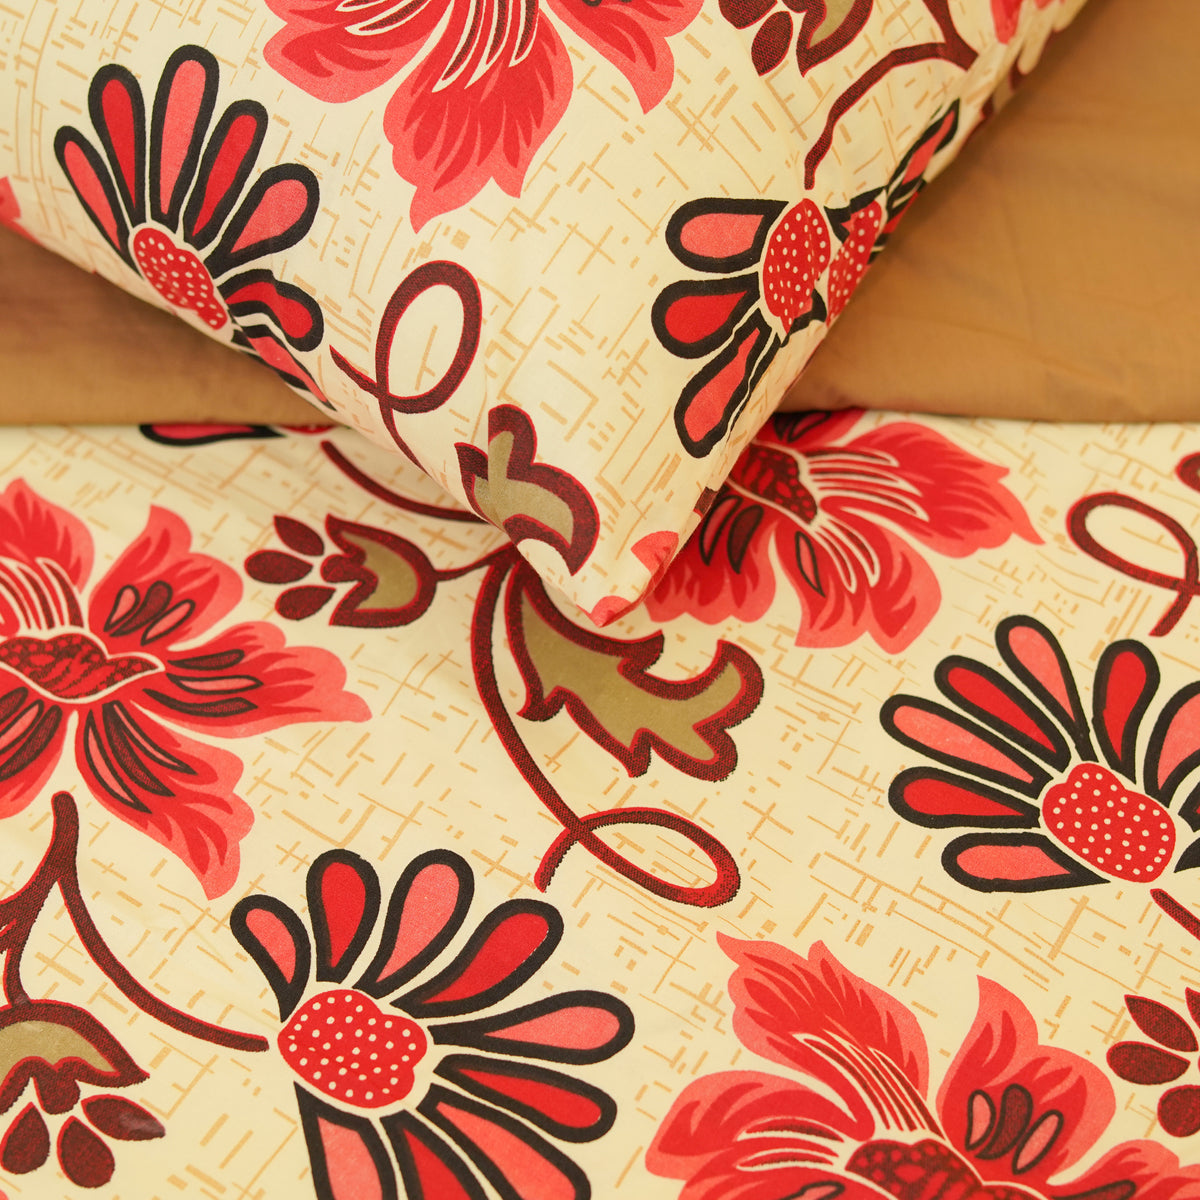 Red Rose King Duvet Cover & Comforter Set